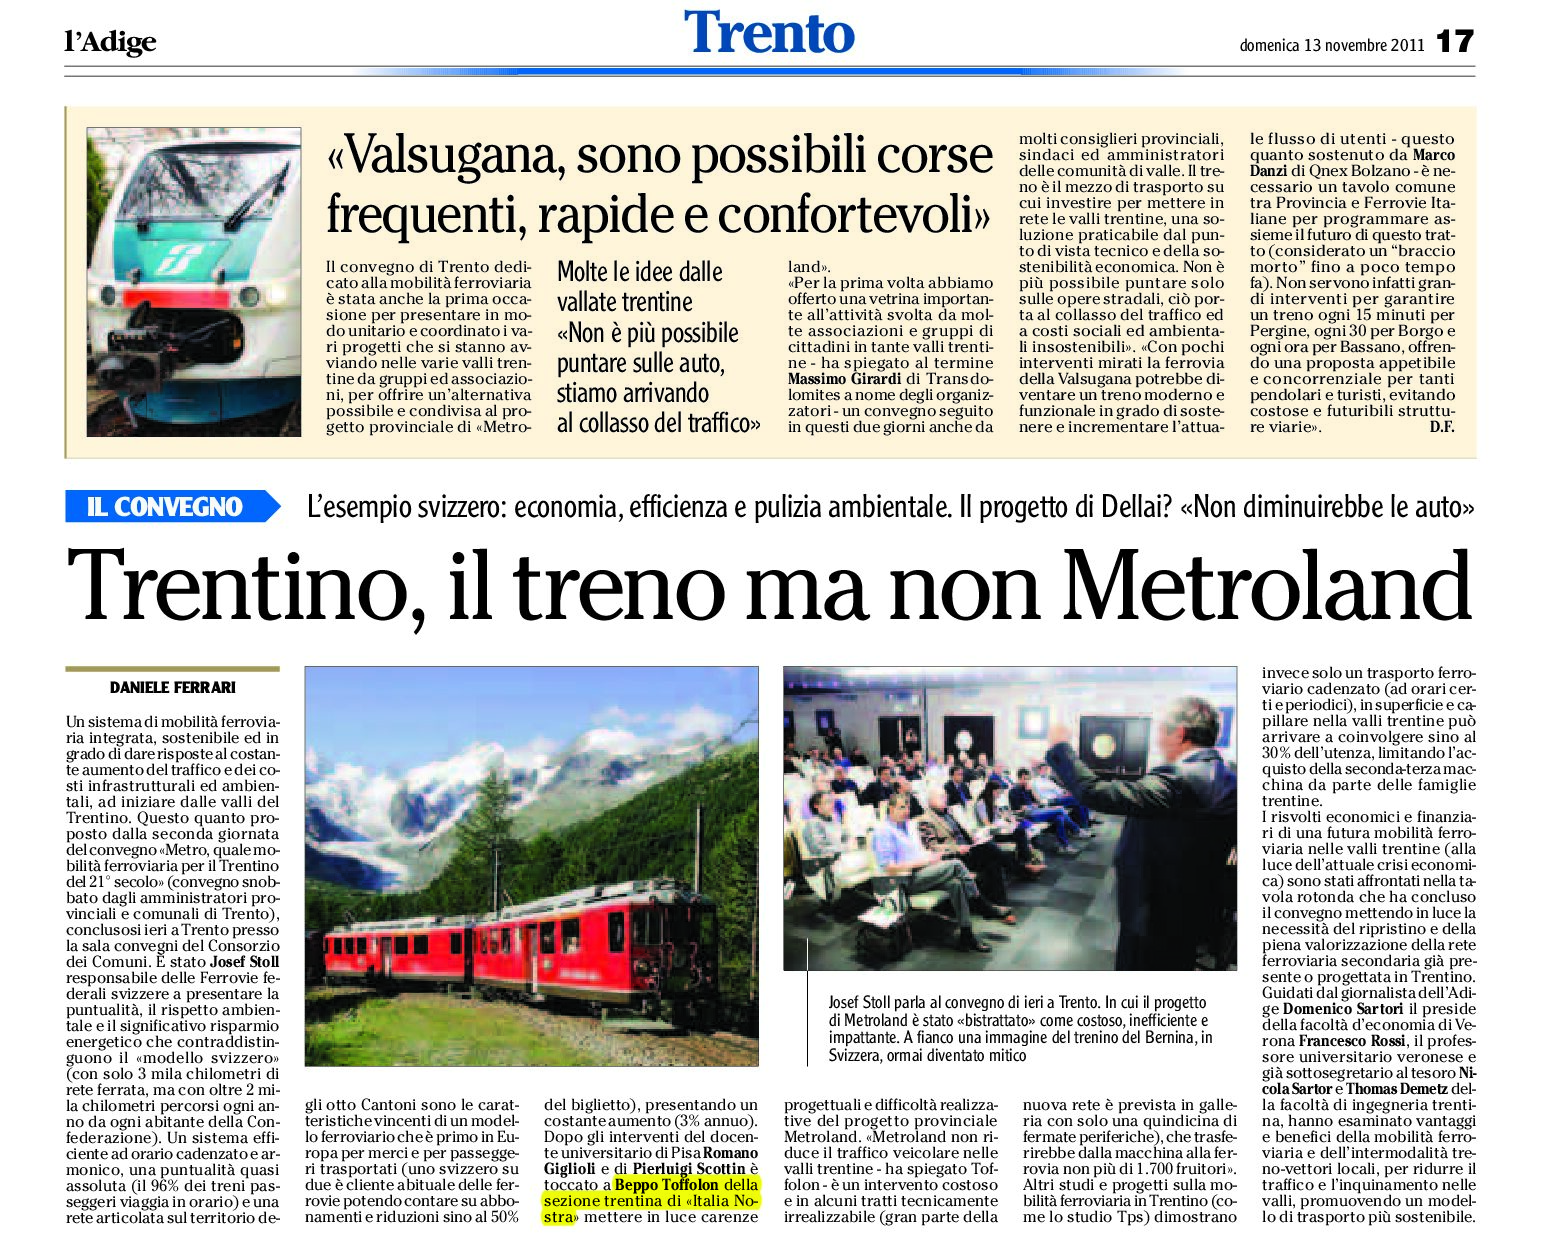 Convegno: Trentino, treno sì, Metroland no